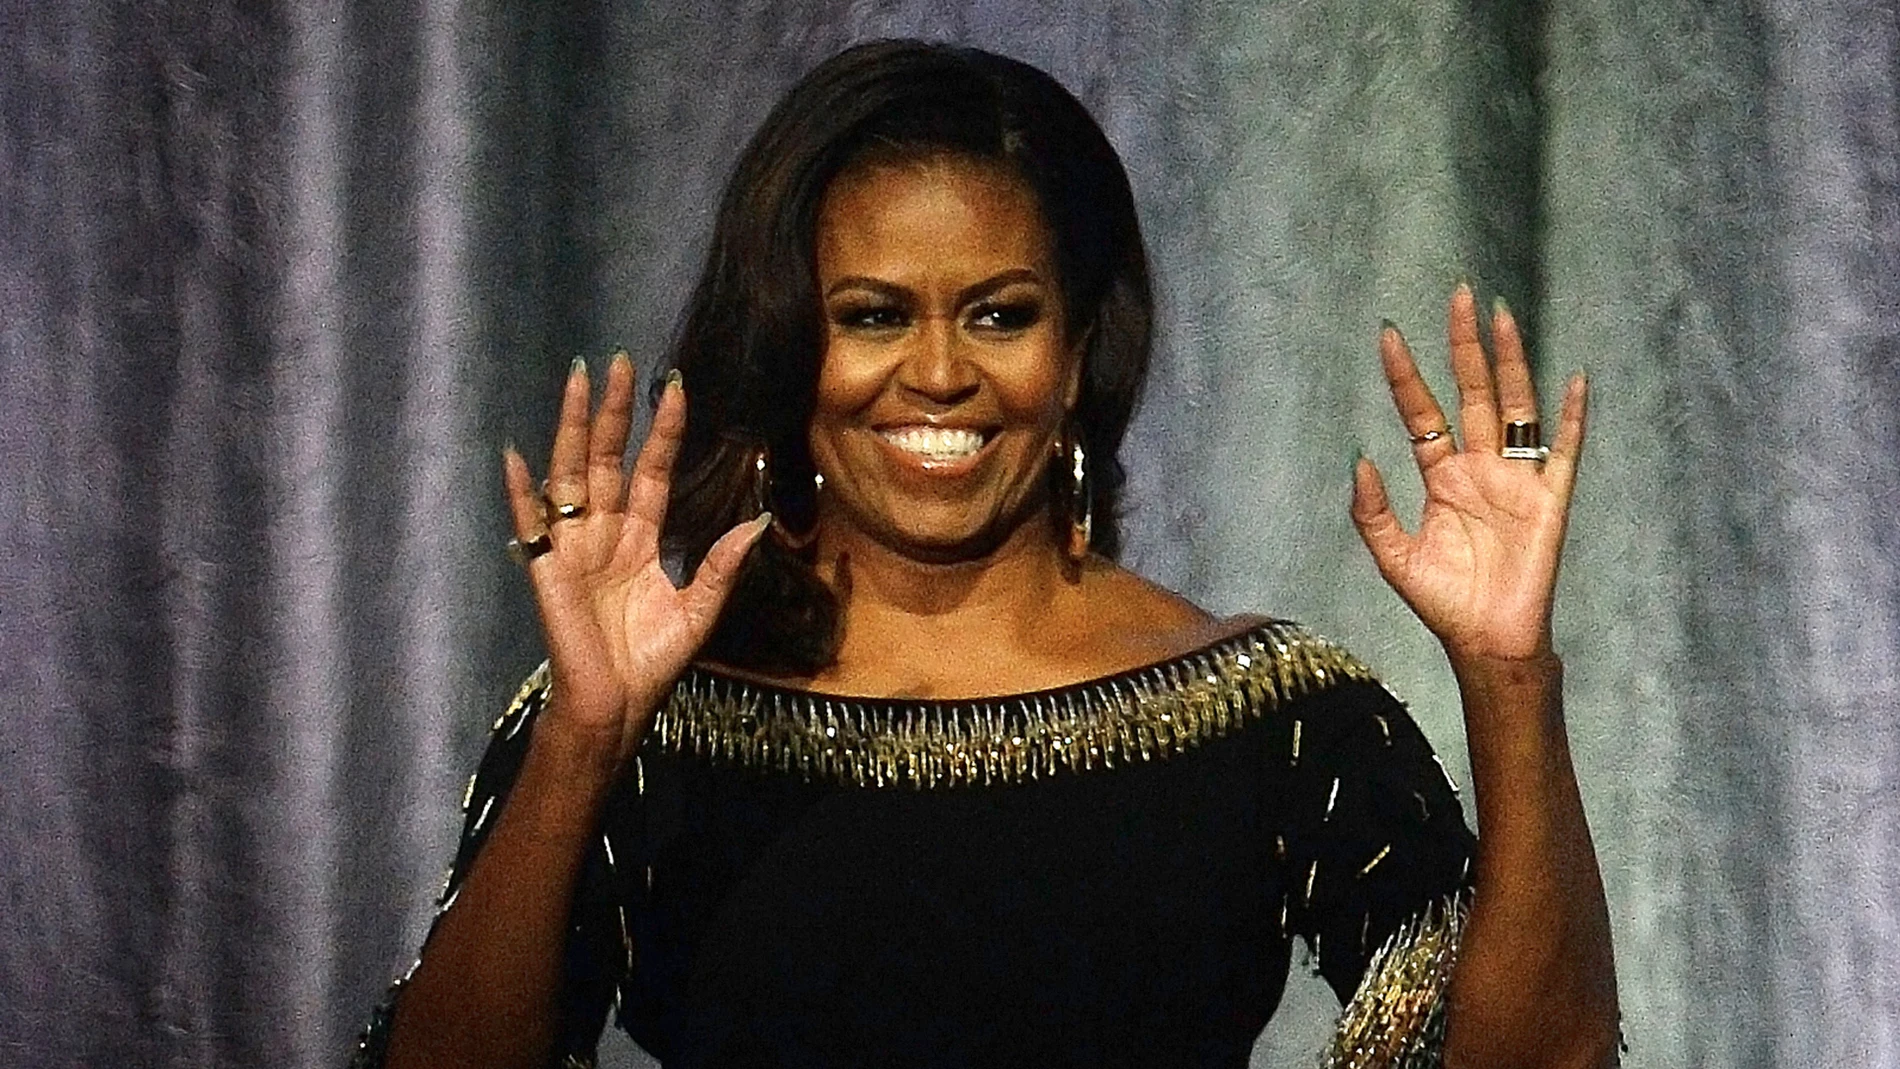 Michelle Obama cumple 59 años y estos son sus looks más icónicos